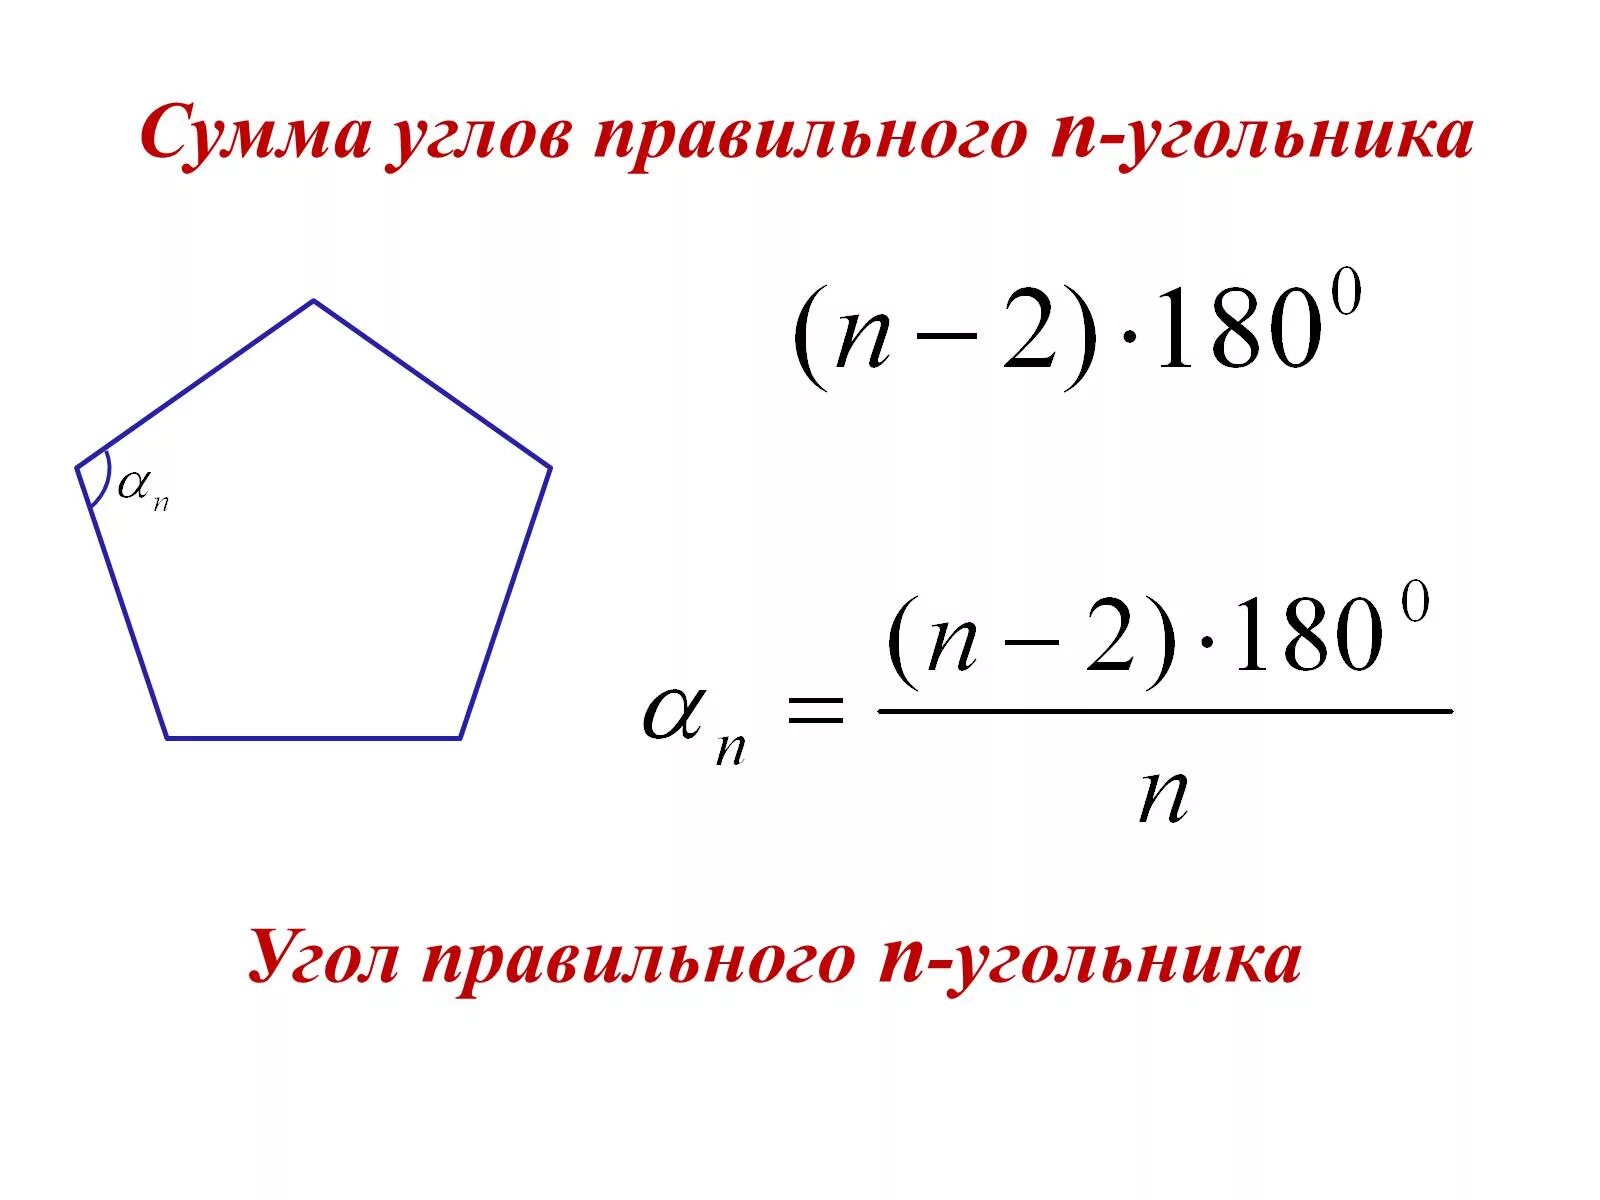 Угол между соседними сторонами правильного многоугольника. Формула угла правильного многоугольника. Формула для нахождения угла правильного многоугольника. Формула нахождения углов правильного n-угольника. Как найти угол многоугольника формула.